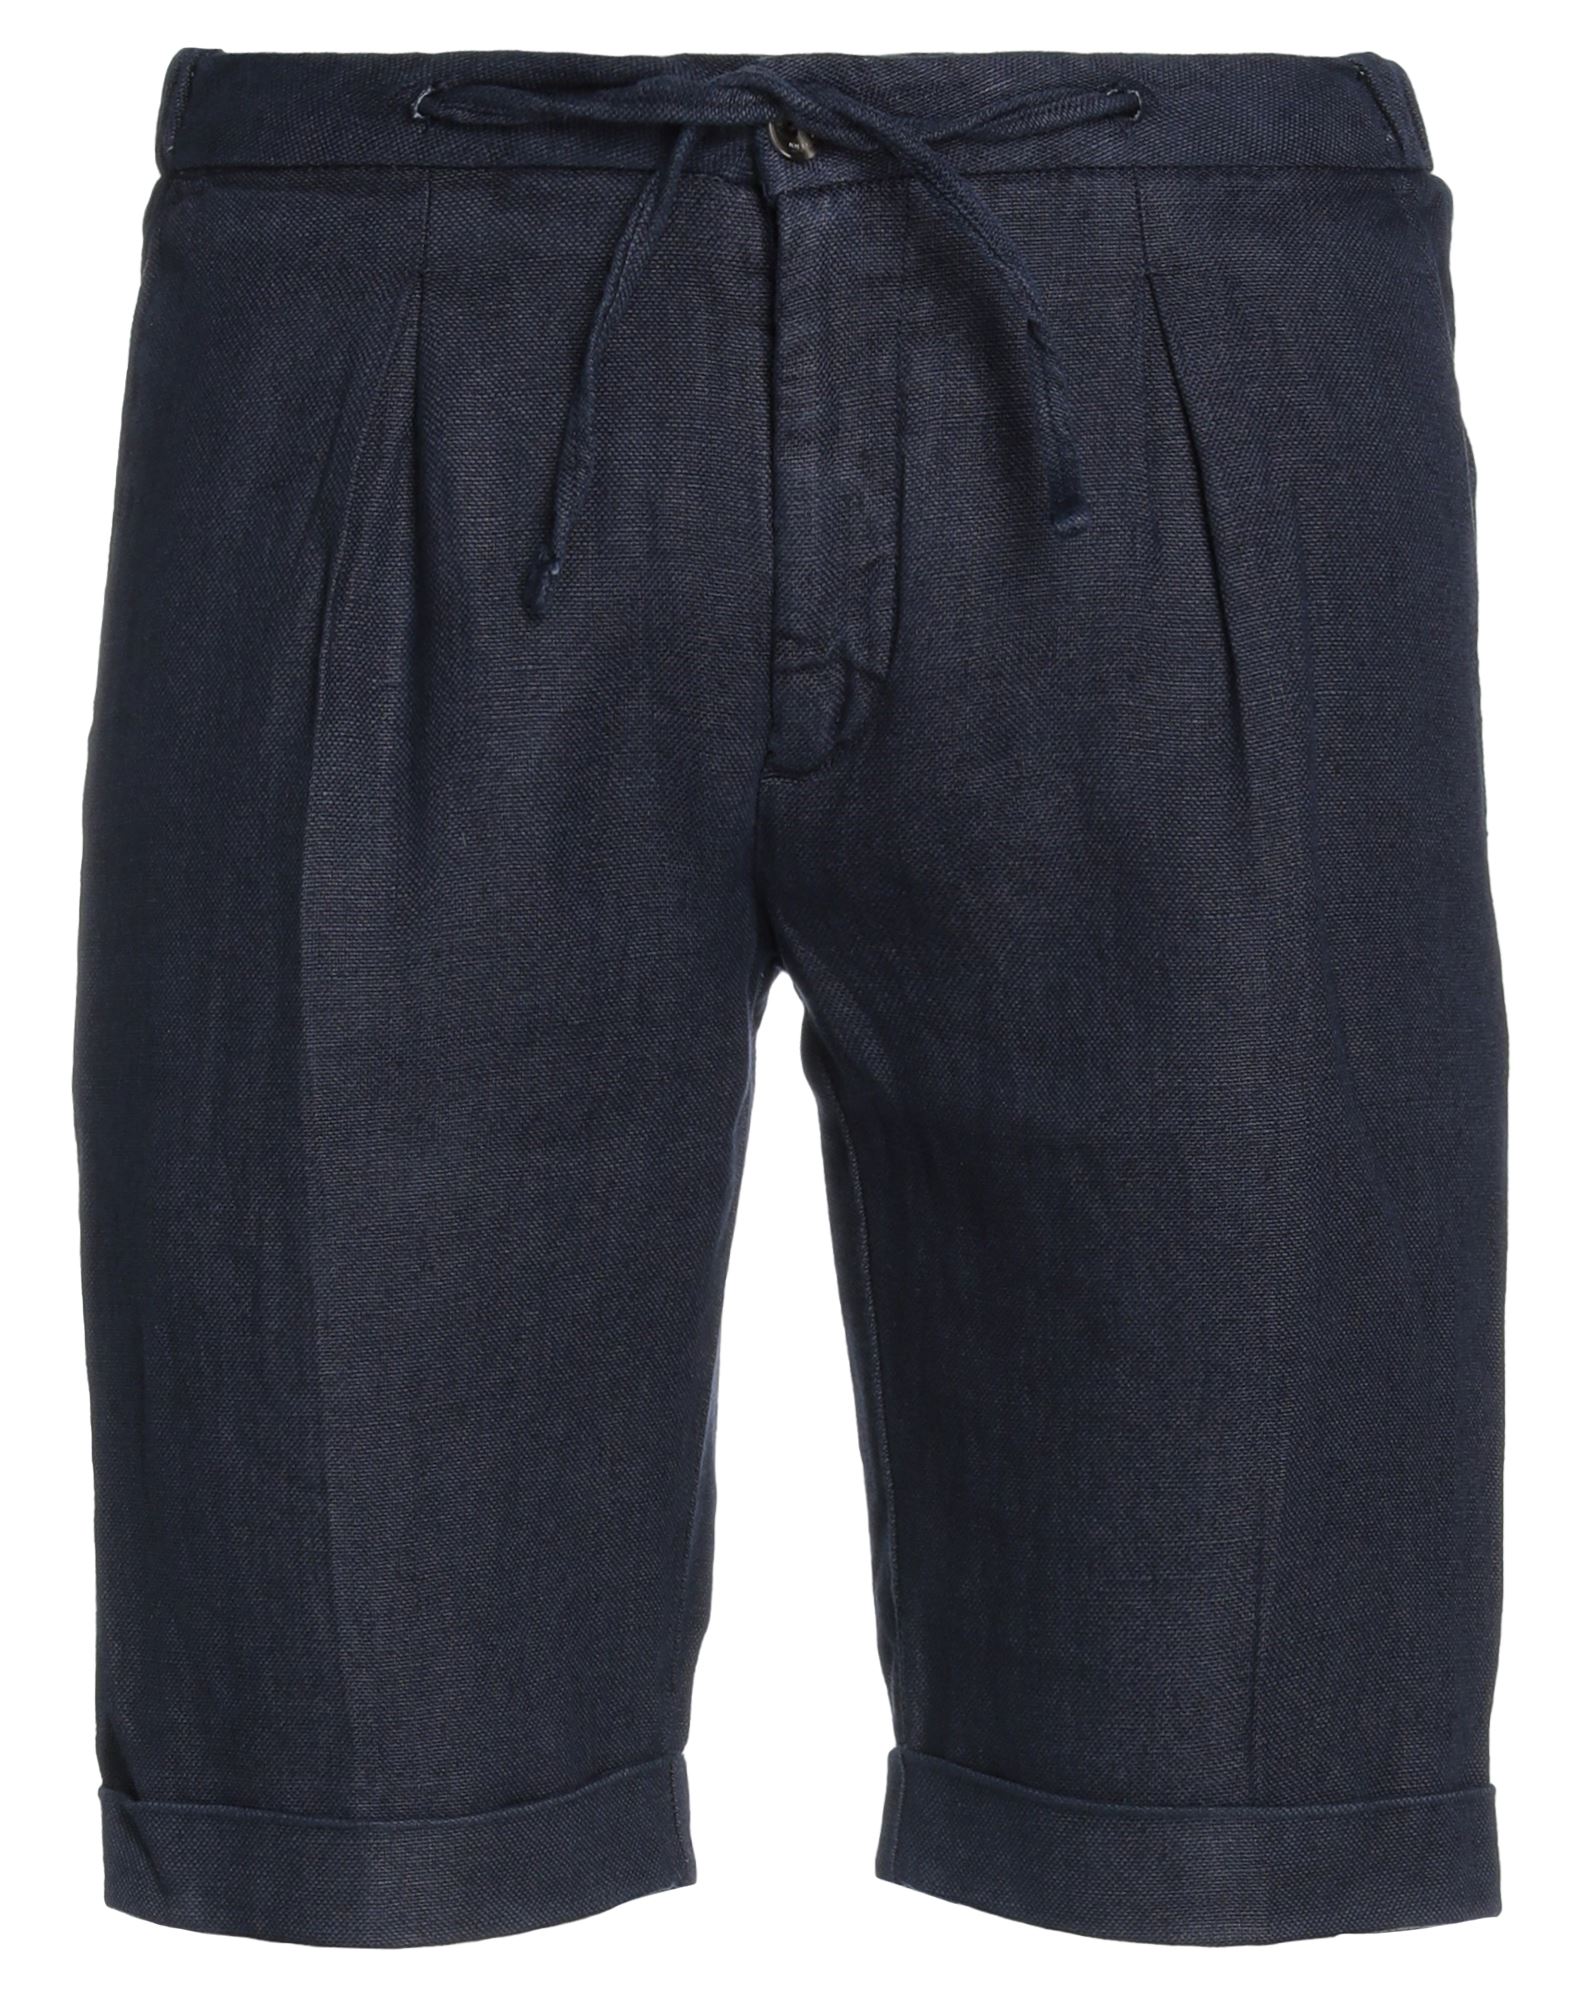 Bulgarini Man Shorts & Bermuda Shorts Midnight Blue Size 40 Linen